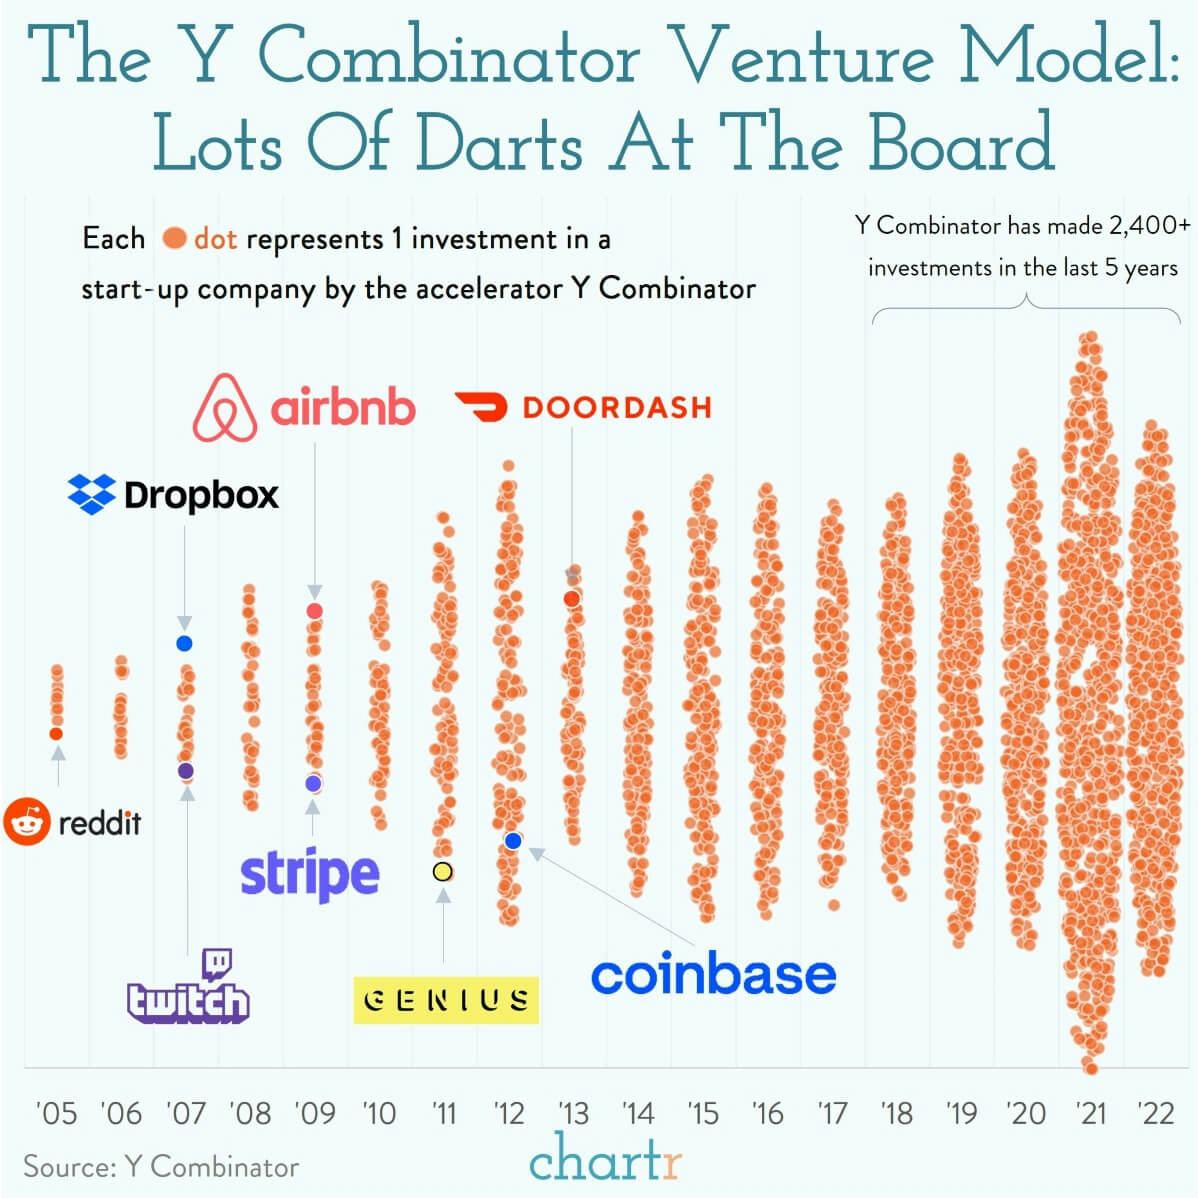 The Y Combinator Venture Model